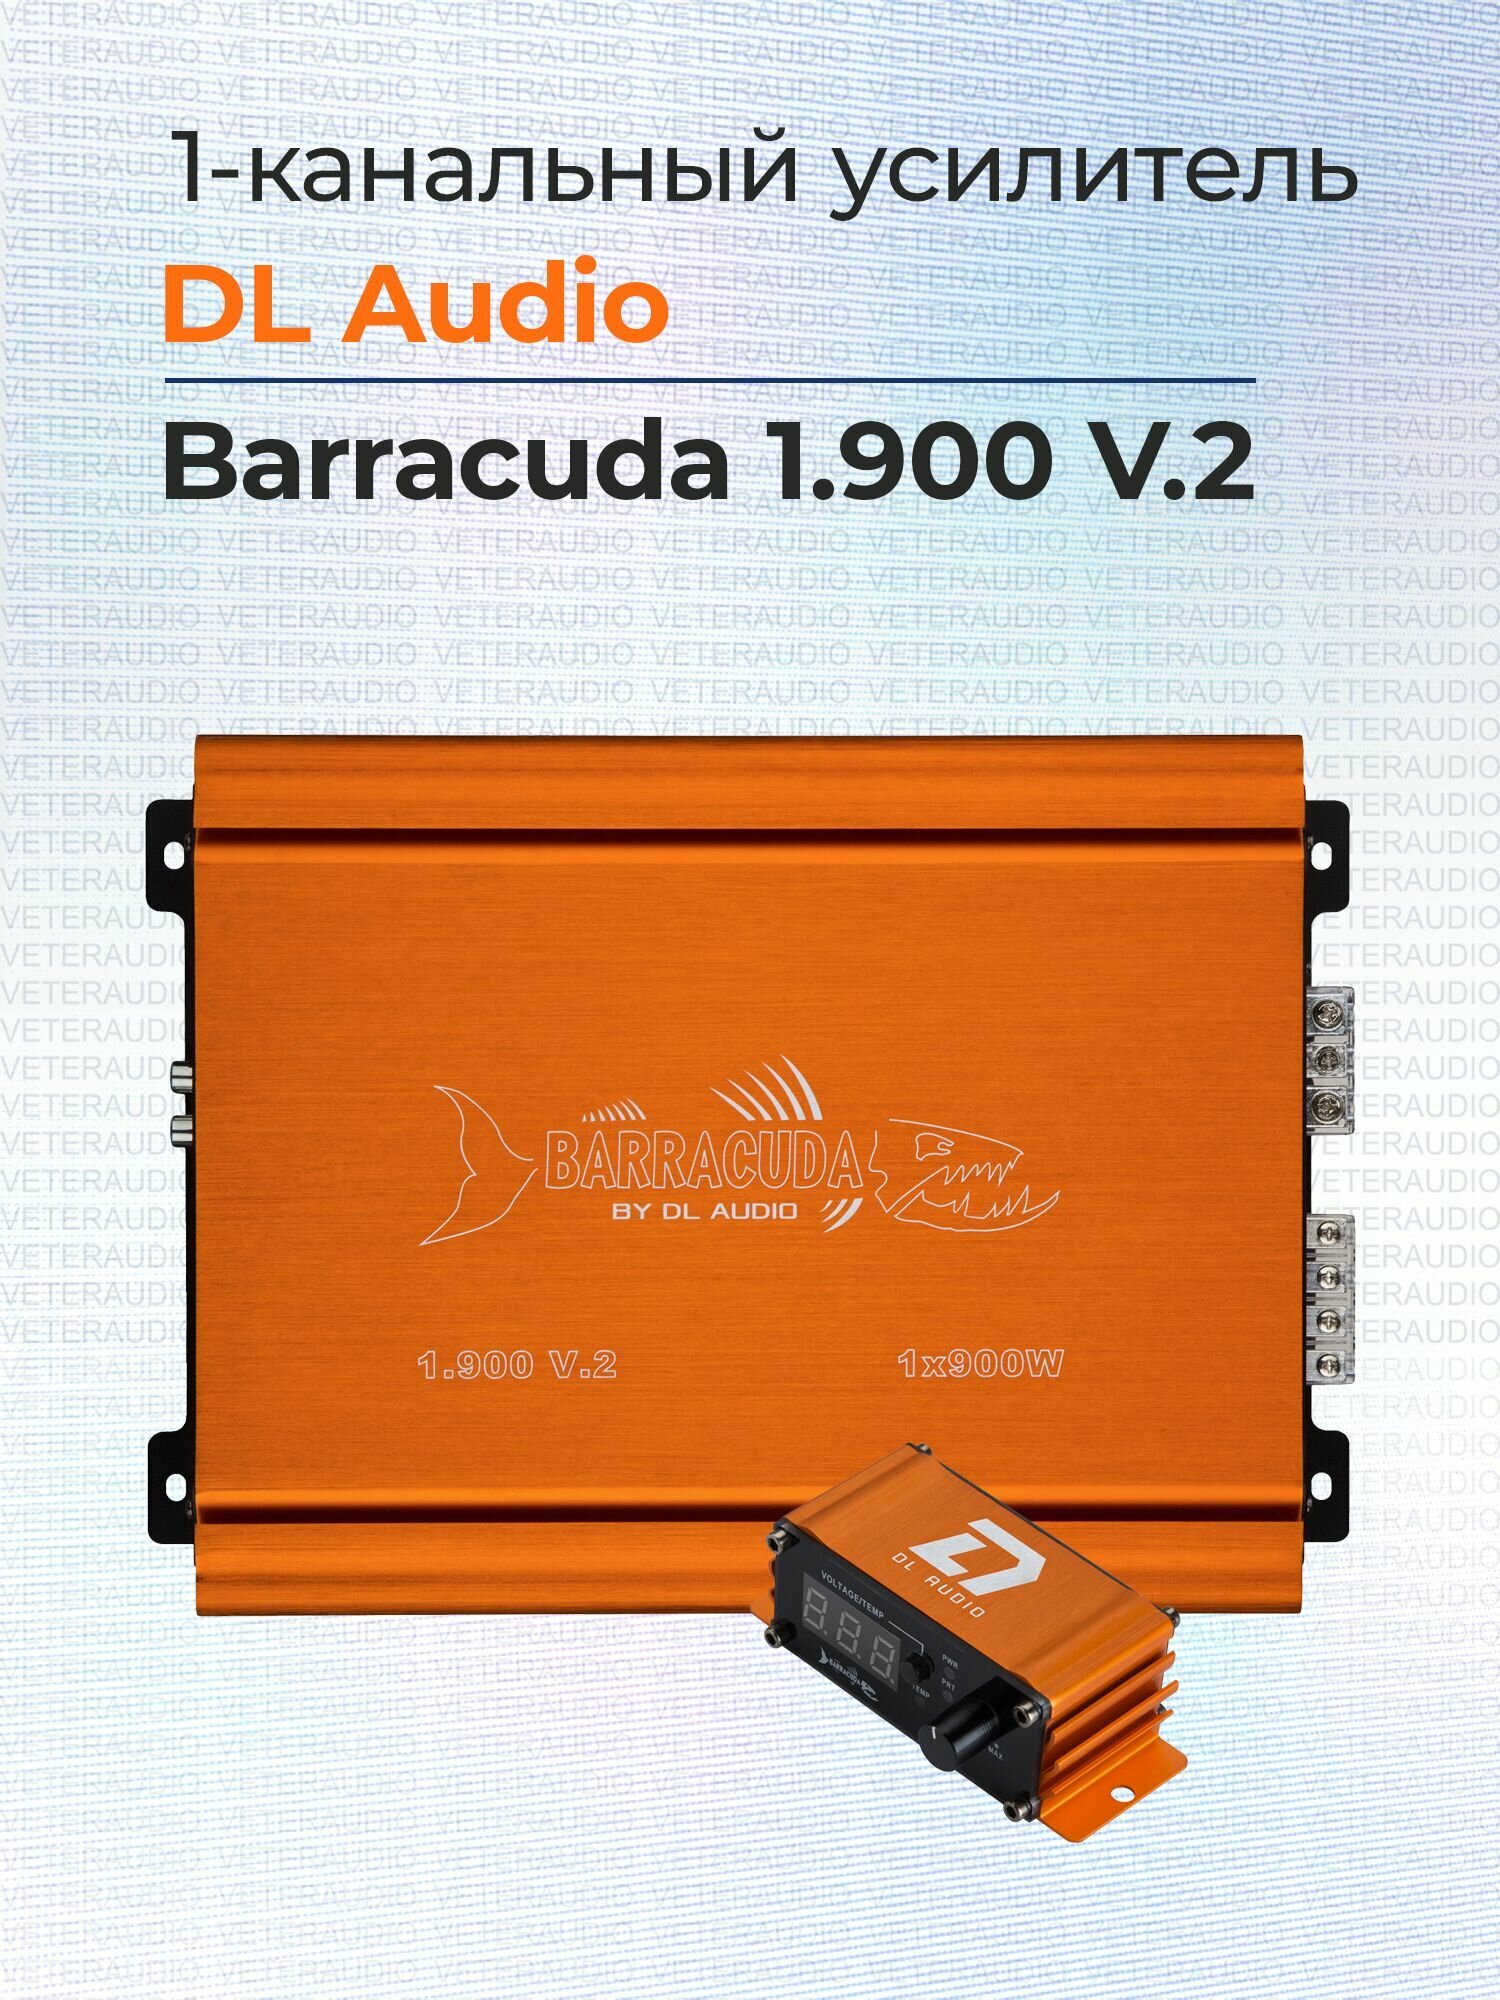 Усилитель 1-канальный DL Audio Barracuda 1.900 V.2